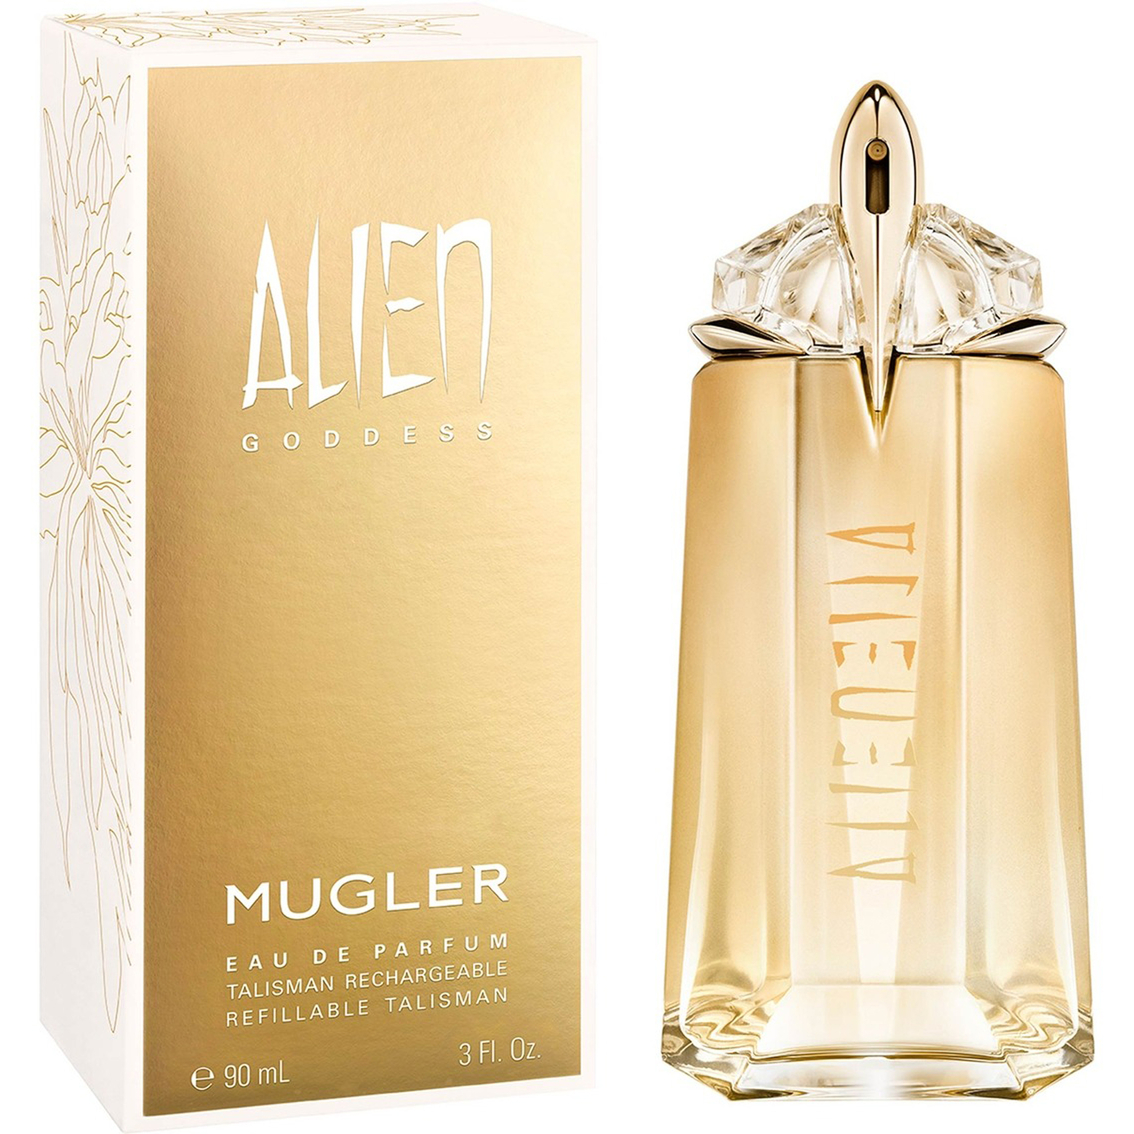 Mugler Alien Goddess Eau de Parfum - Image 2 of 2